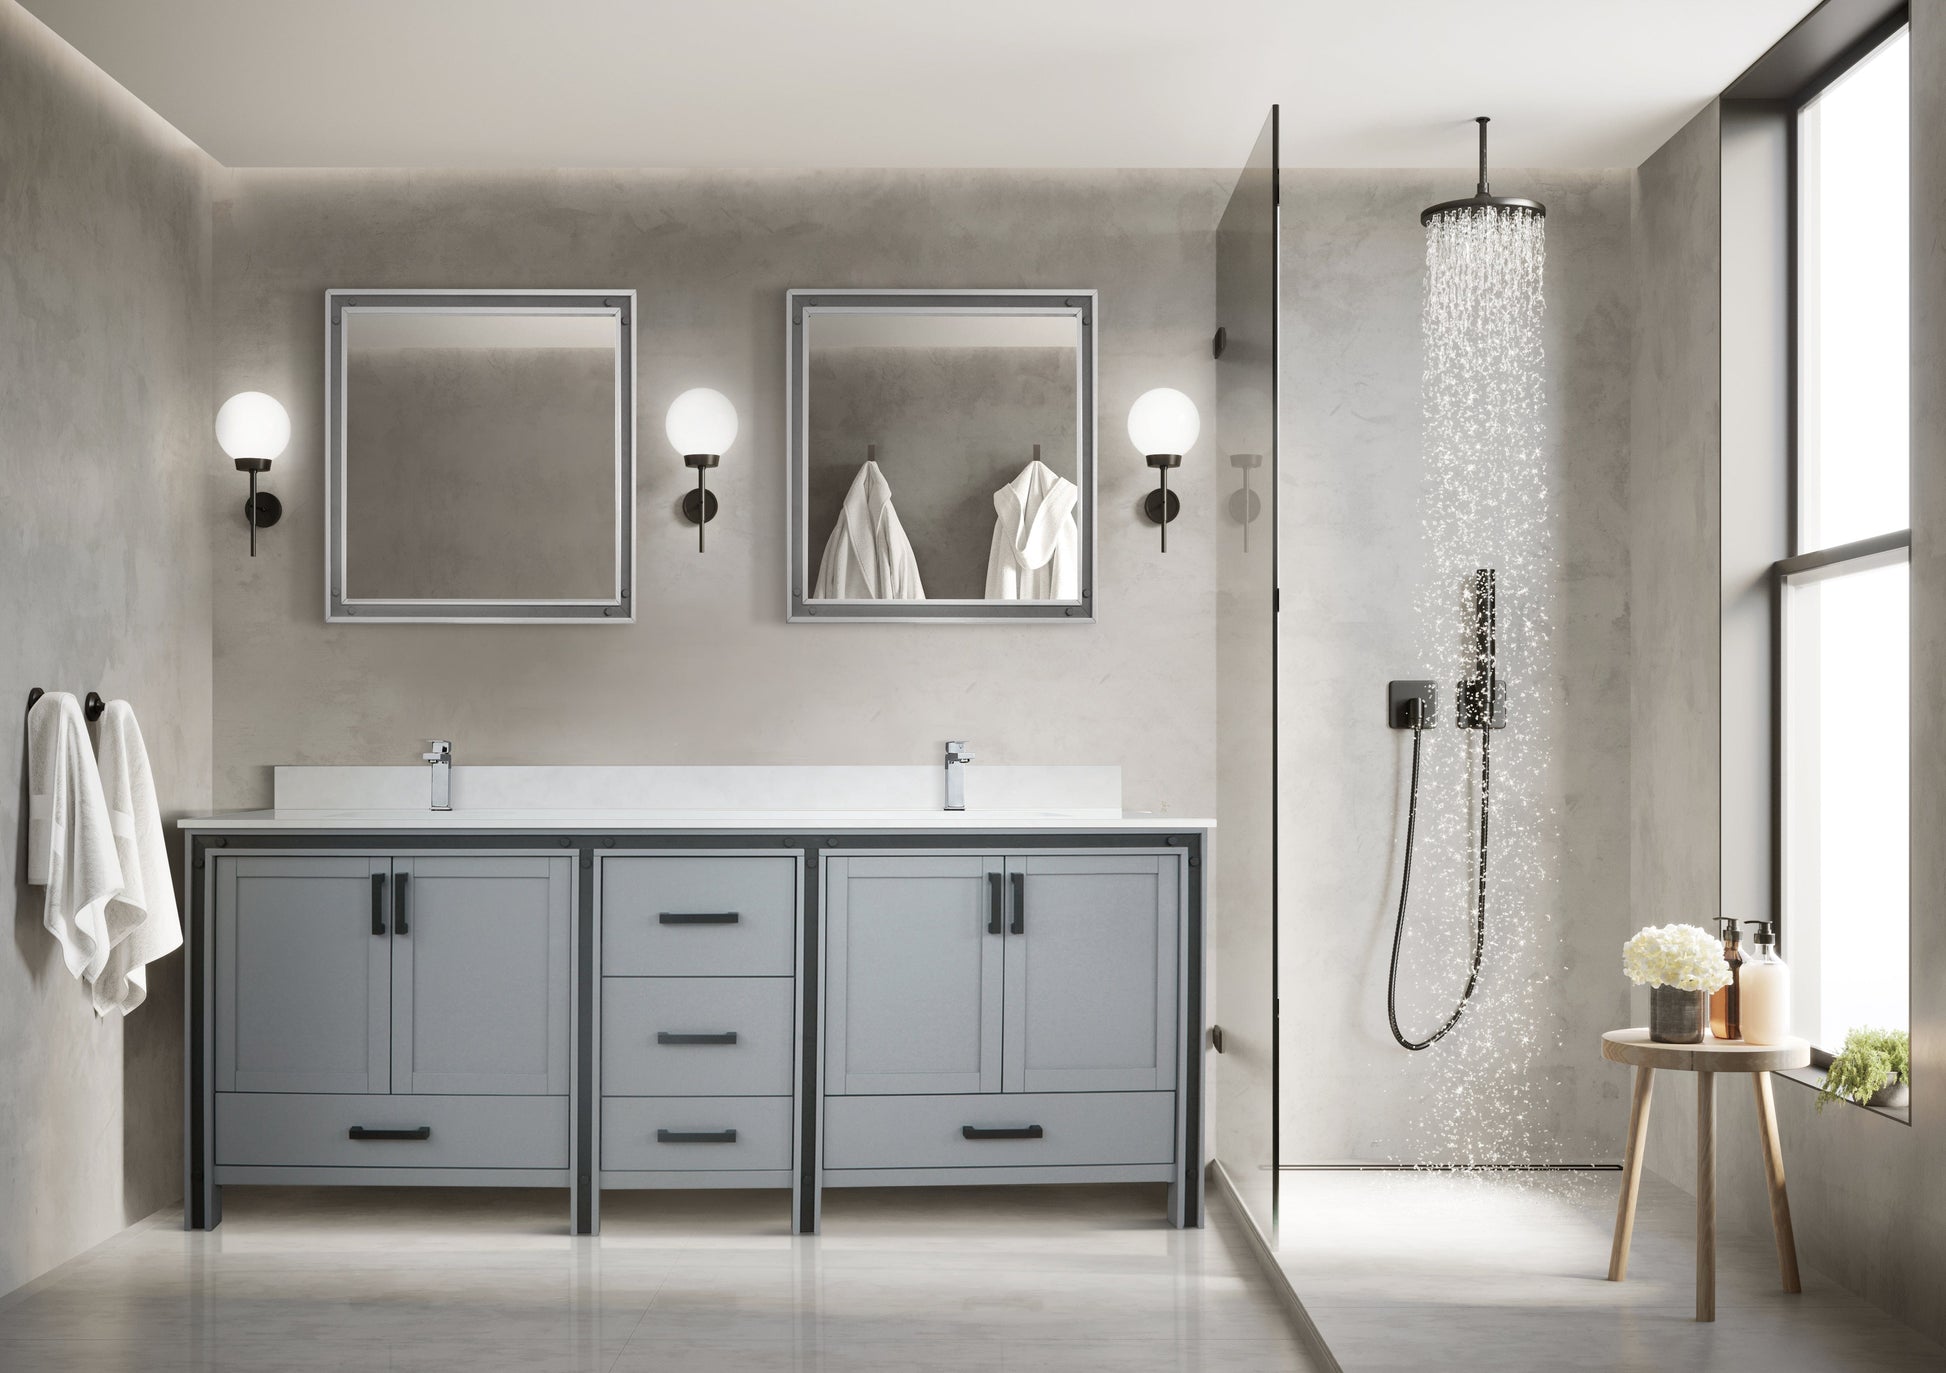 Bell + Modern Bathroom Vanity Dark Grey / No Countertop / No Mirror Augustine 84" x 22" Double Bath Vanity